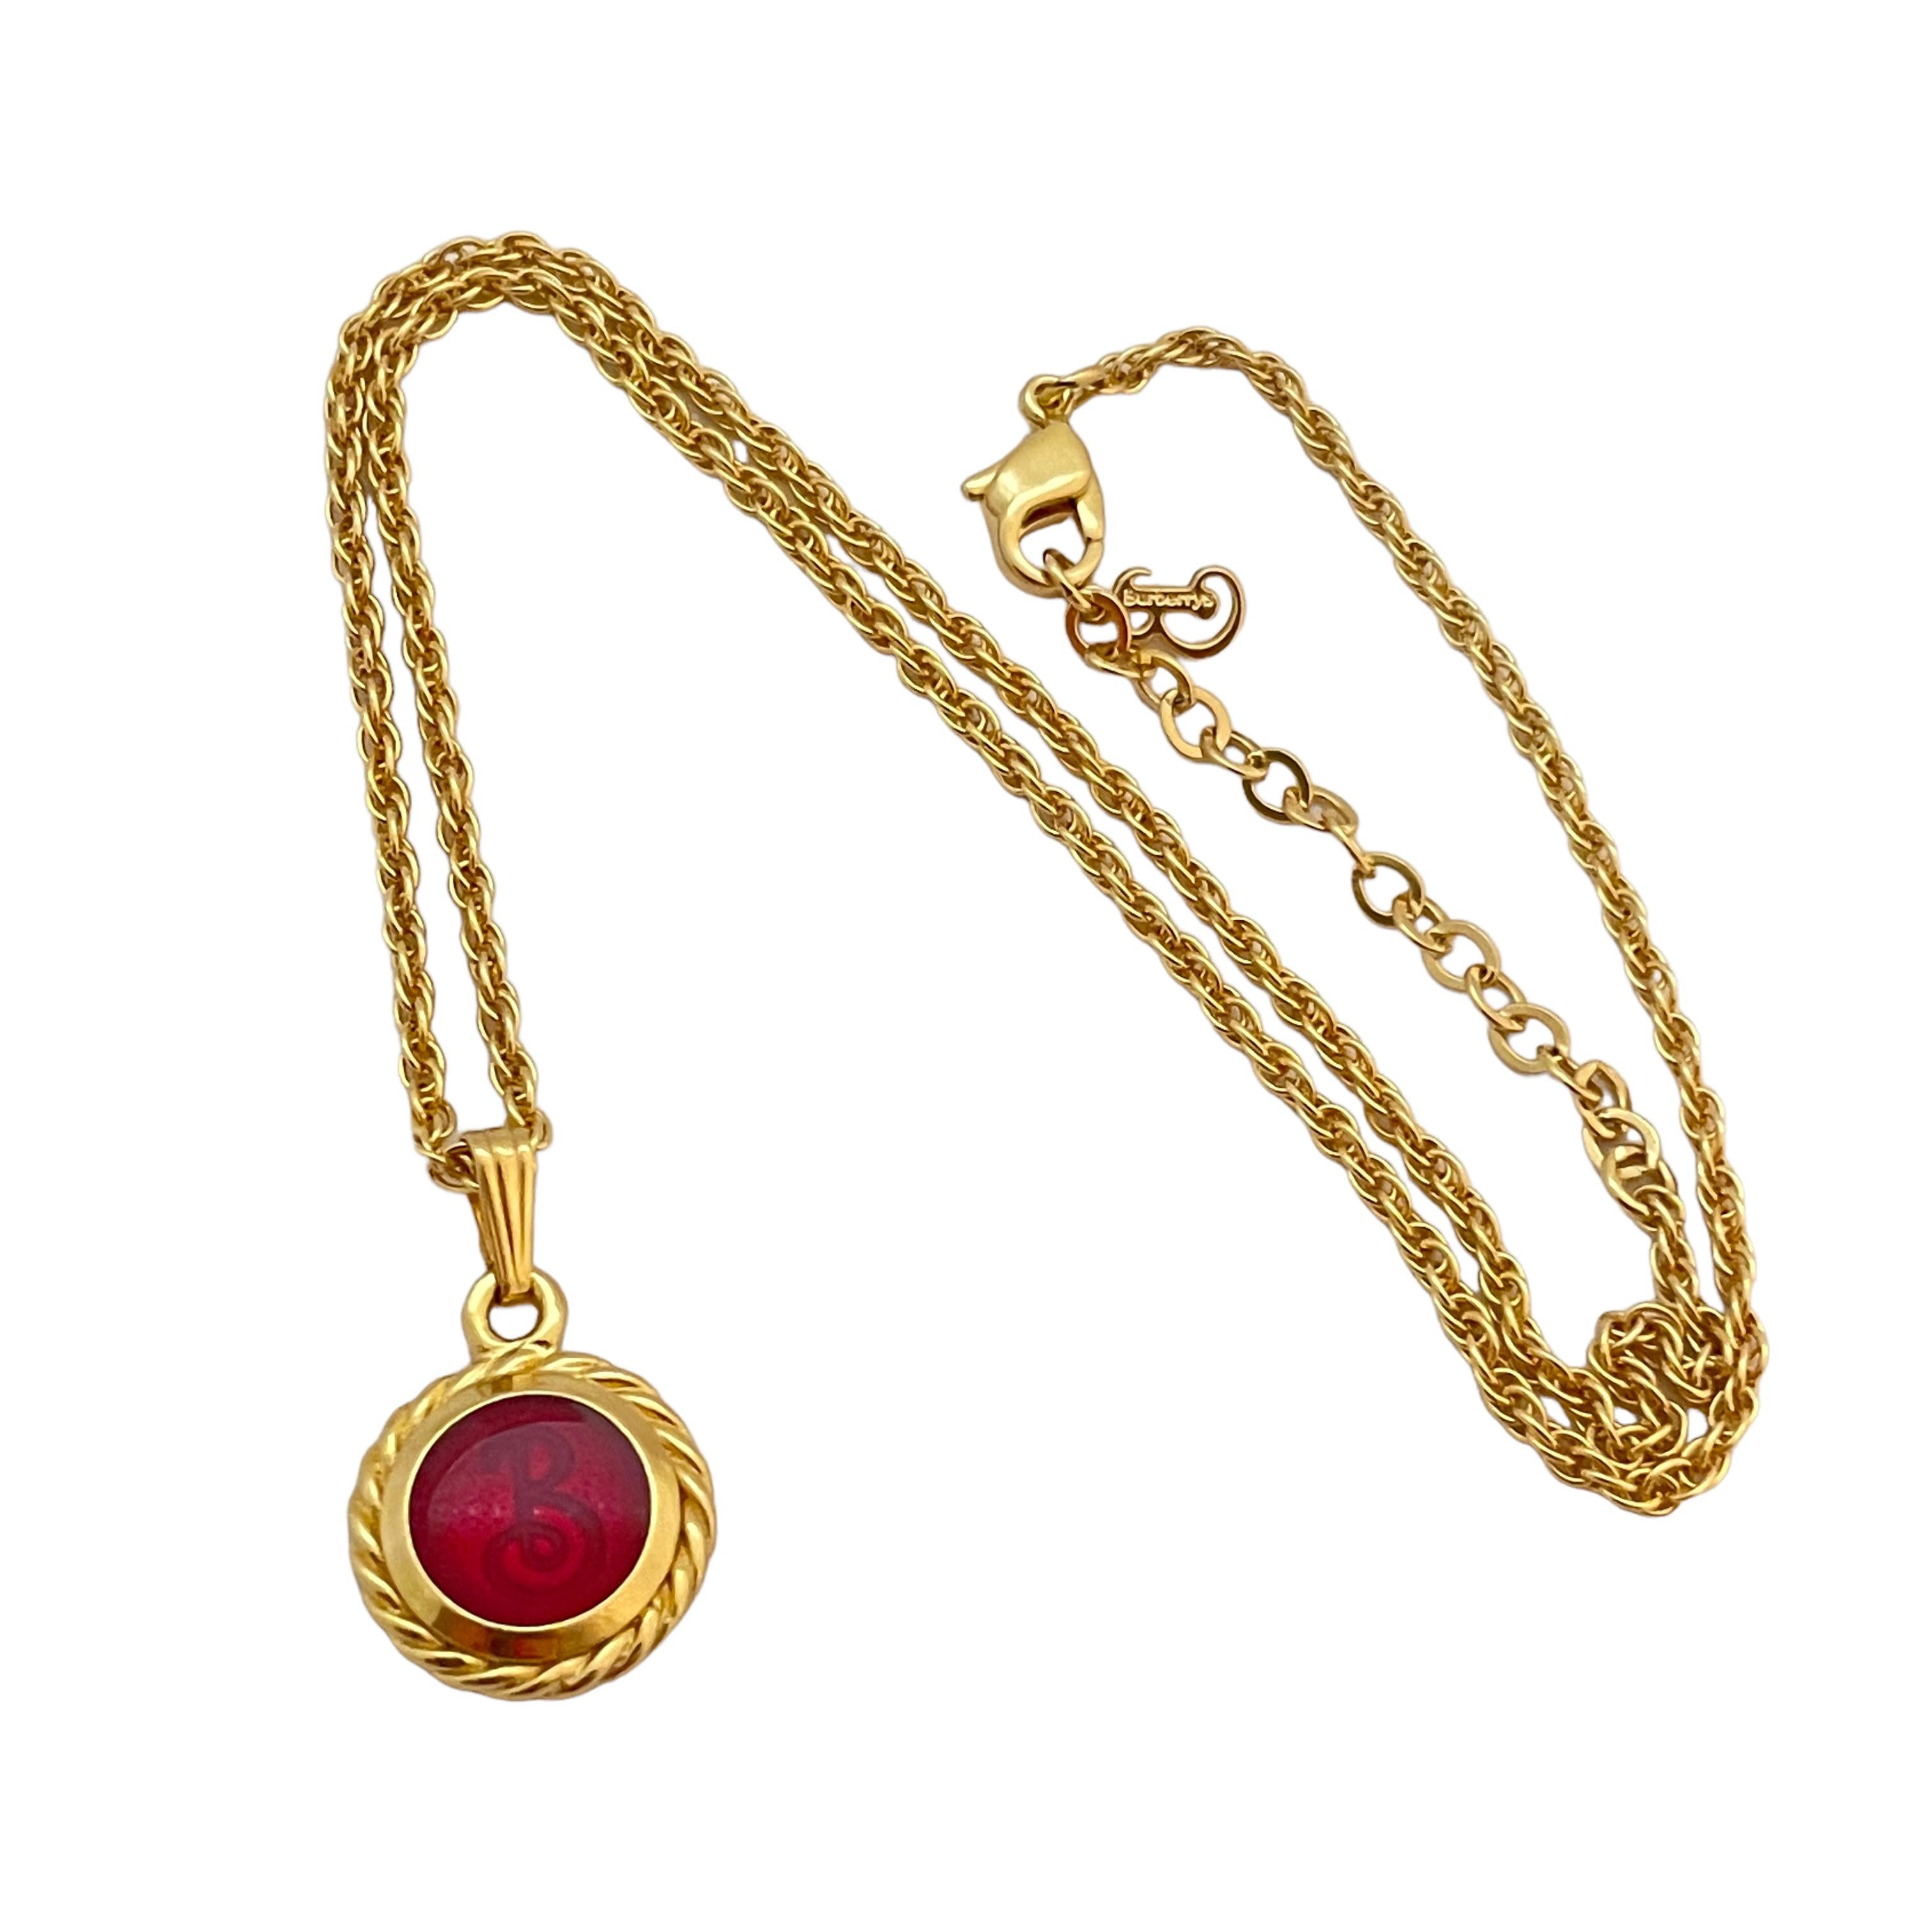 DÉTAILS

• signé BURBERRY'S 

• ton or avec rouge 

• collier de défilé de designer vintage

MESURES

• 17